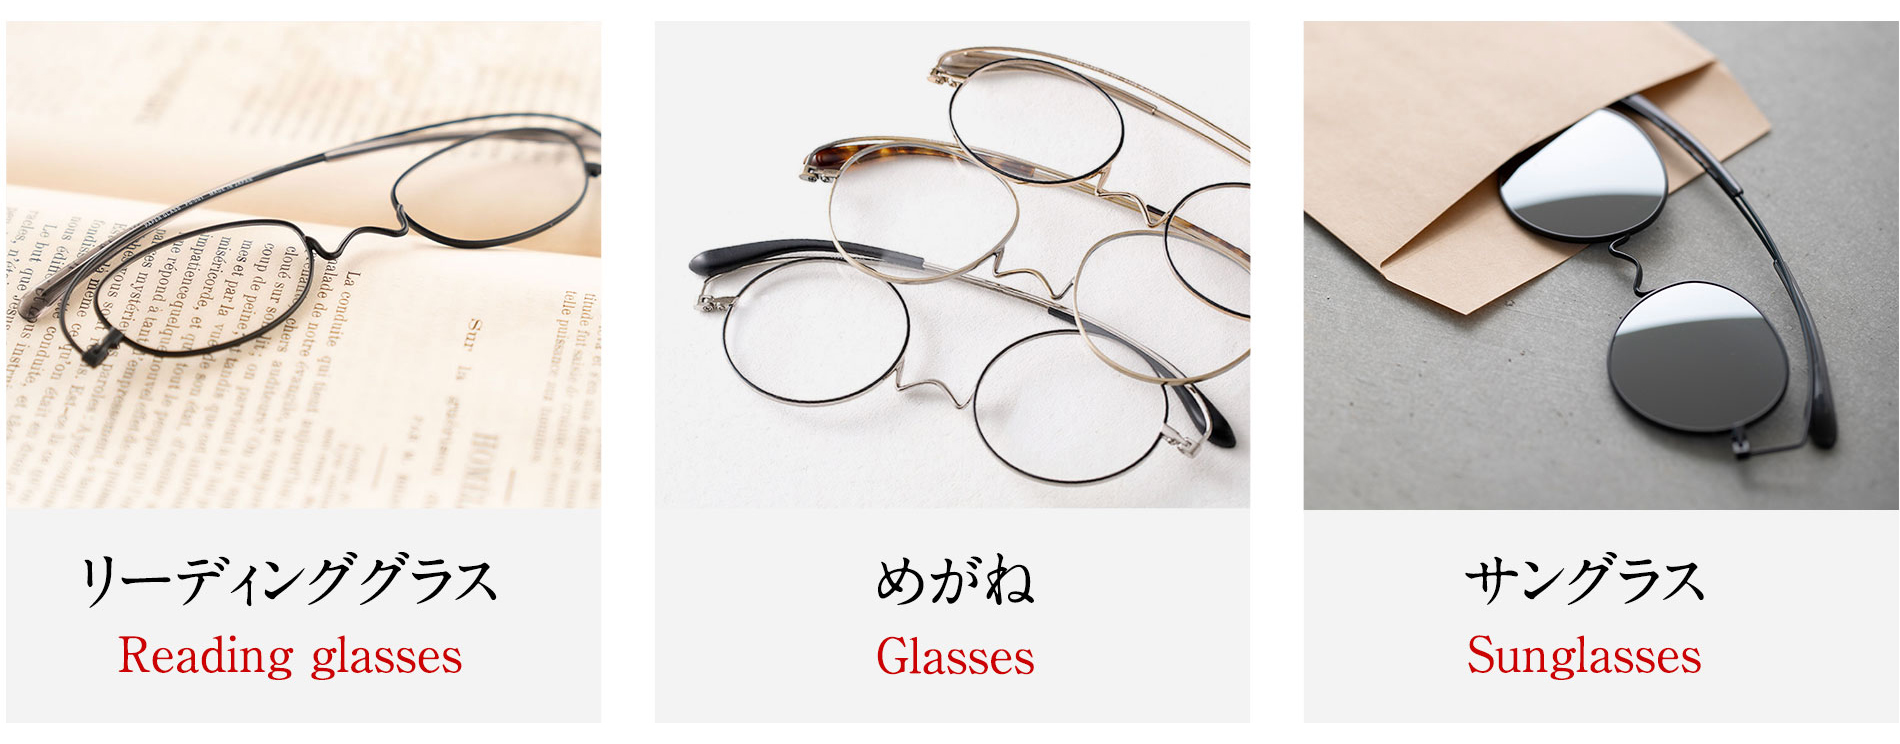 鯖江製 薄型めがね おしゃれ 老眼鏡 リーディンググラス